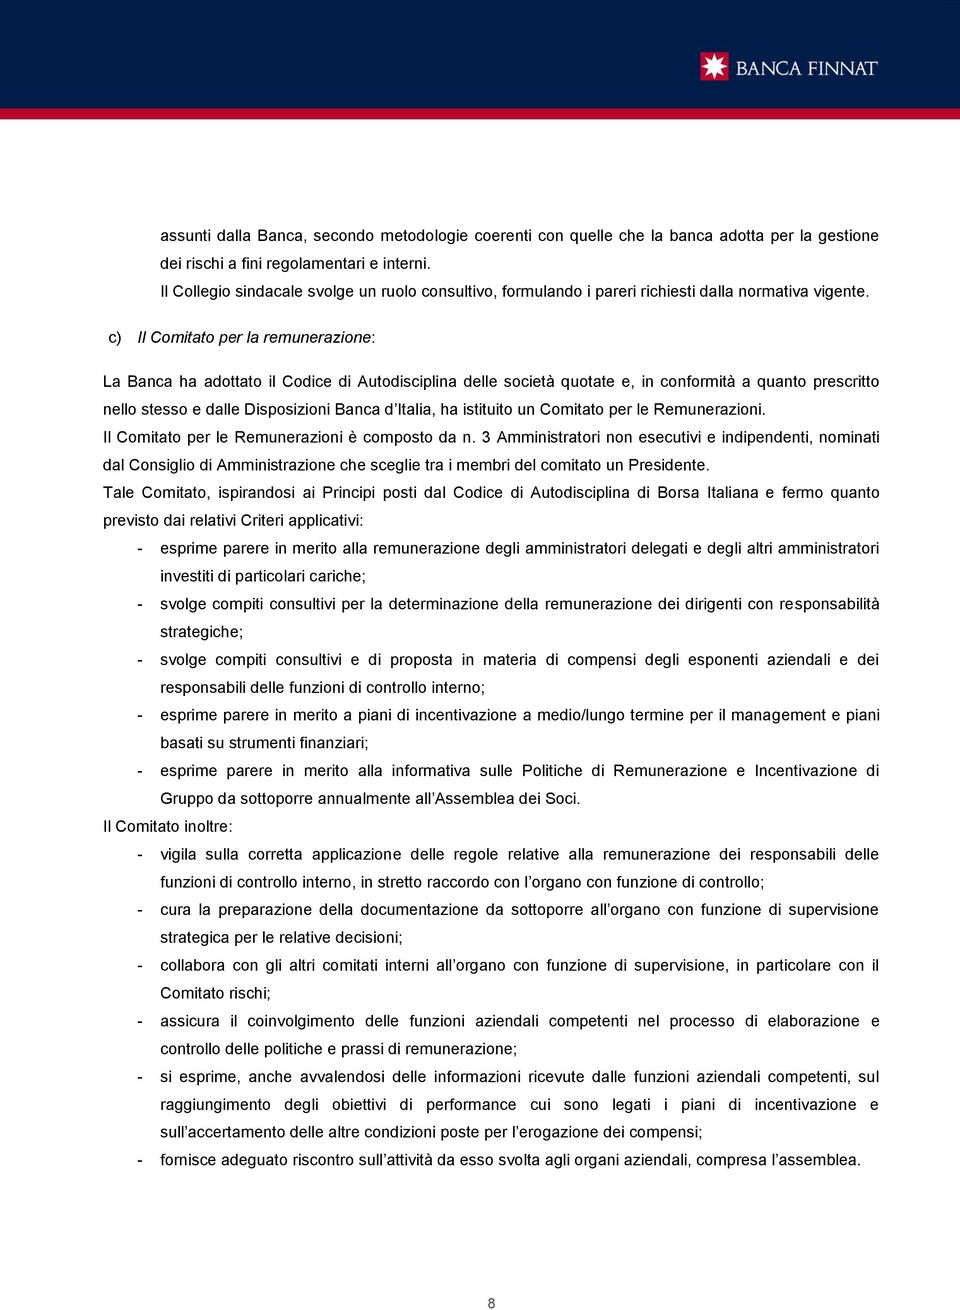 c) Il Comitato per la remunerazione: La Banca ha adottato il Codice di Autodisciplina delle società quotate e, in conformità a quanto prescritto nello stesso e dalle Disposizioni Banca d Italia, ha